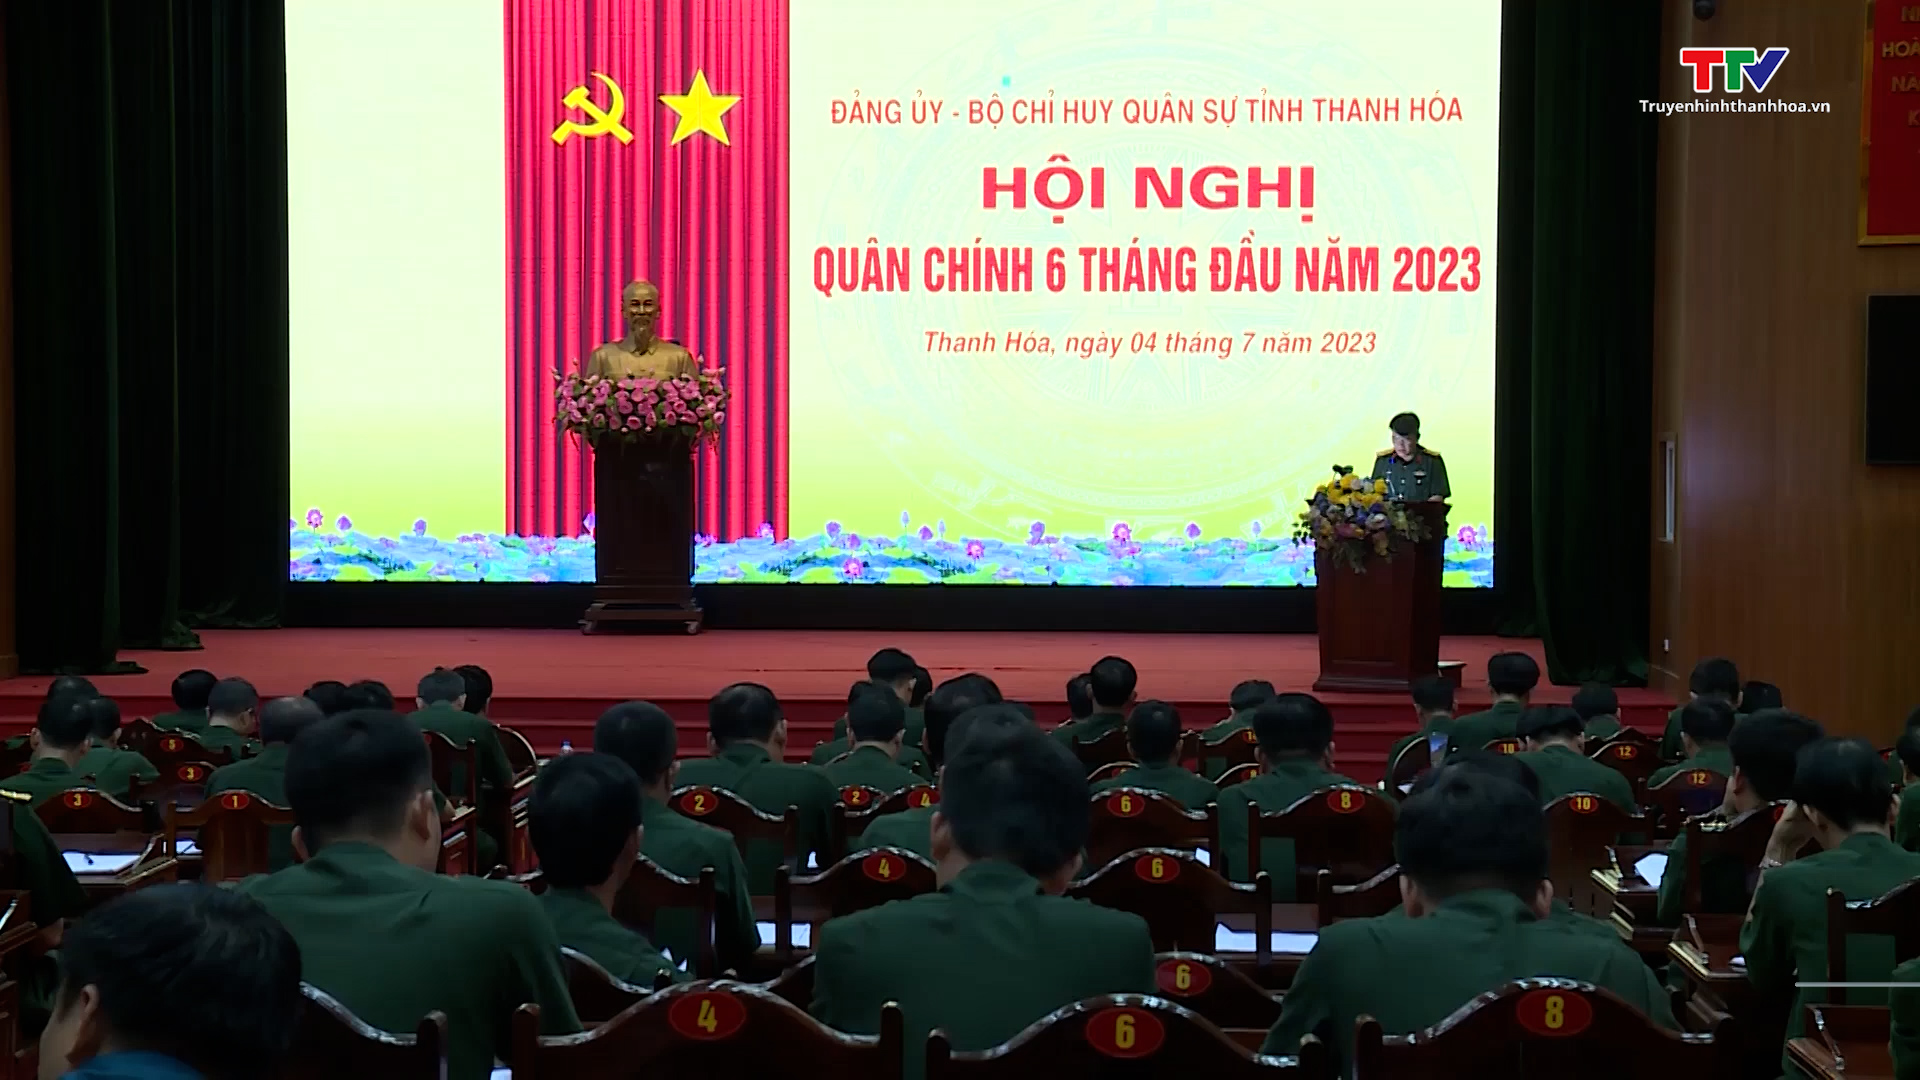 Bộ Chỉ huy quân sự Thanh Hóa tổ chức Hội nghị quân chính 6 tháng đầu năm 2023 - Ảnh 2.